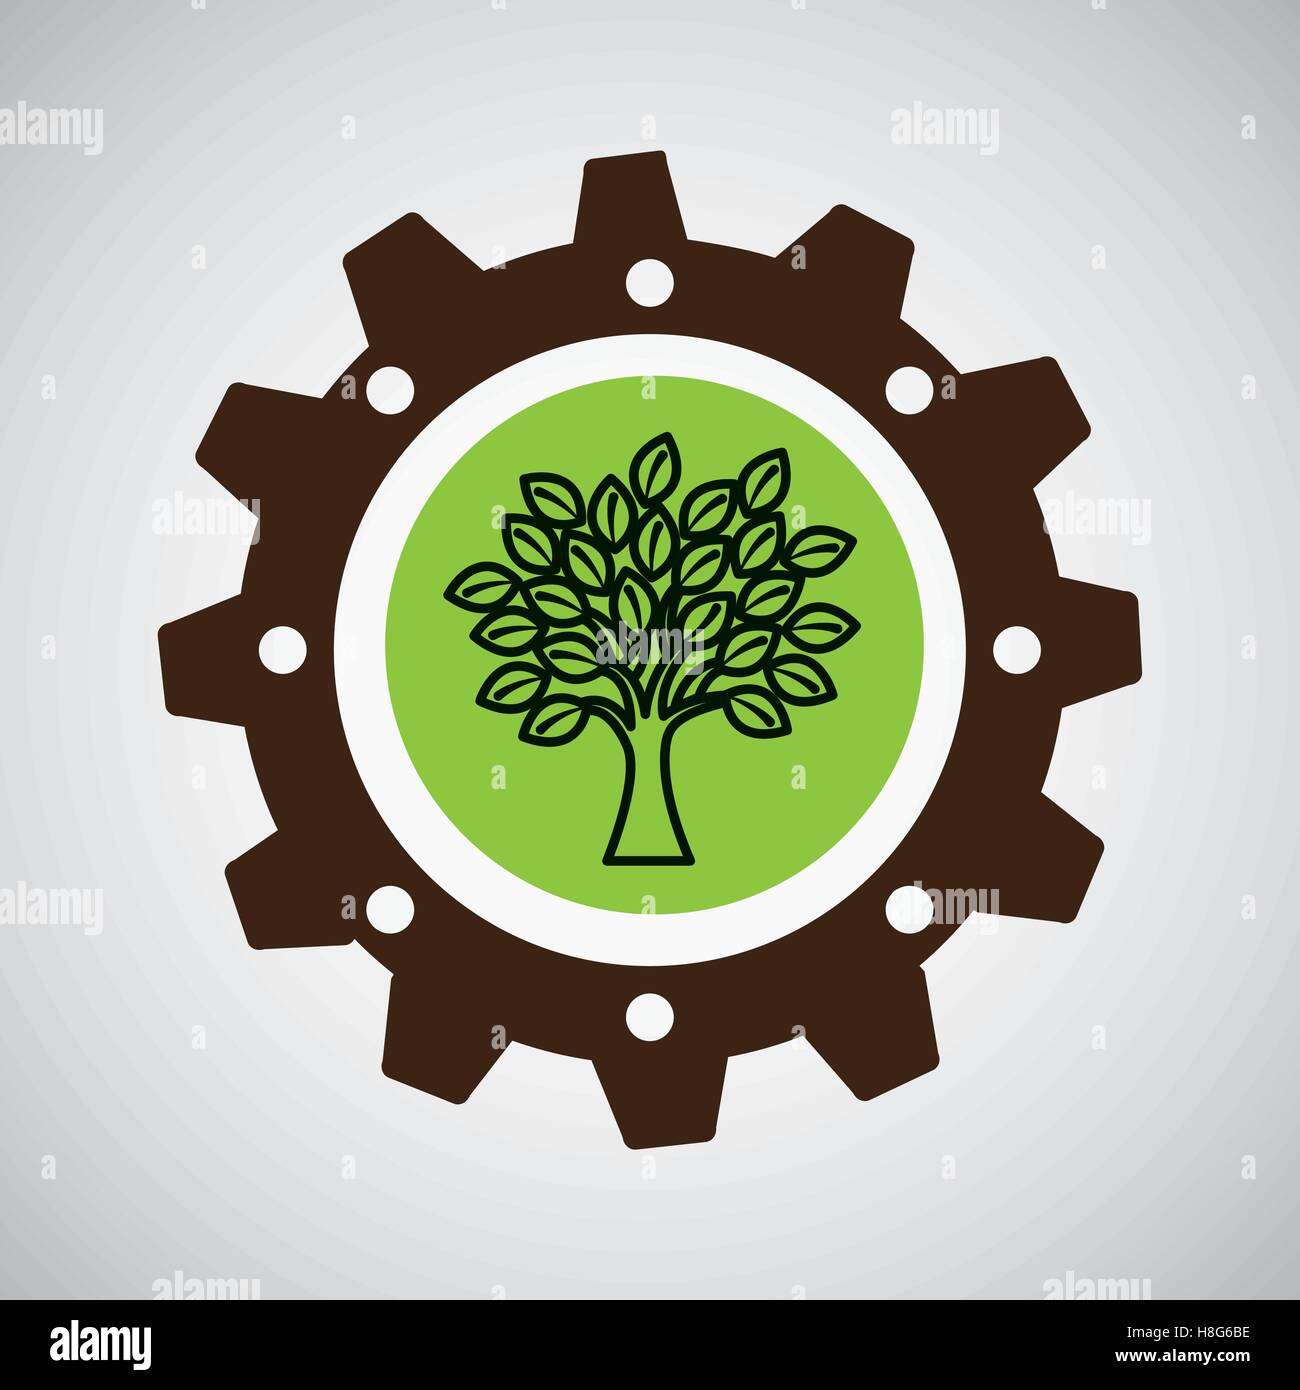 symbol environment gear tree vector illustration eps 10 Stock Vector